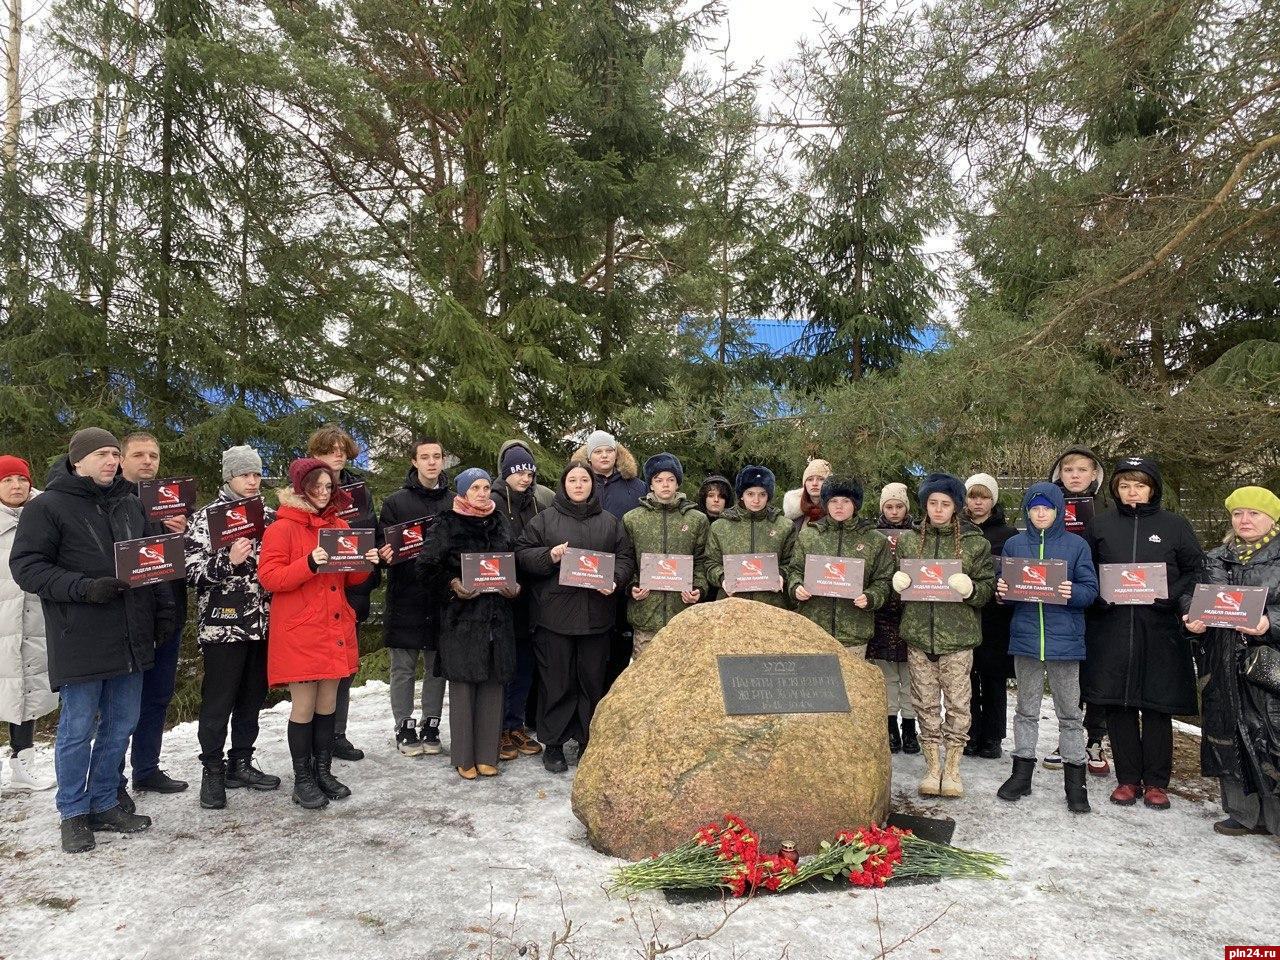 Церемония возложения цветов к мемориальному знаку состоялась в Псковском районе